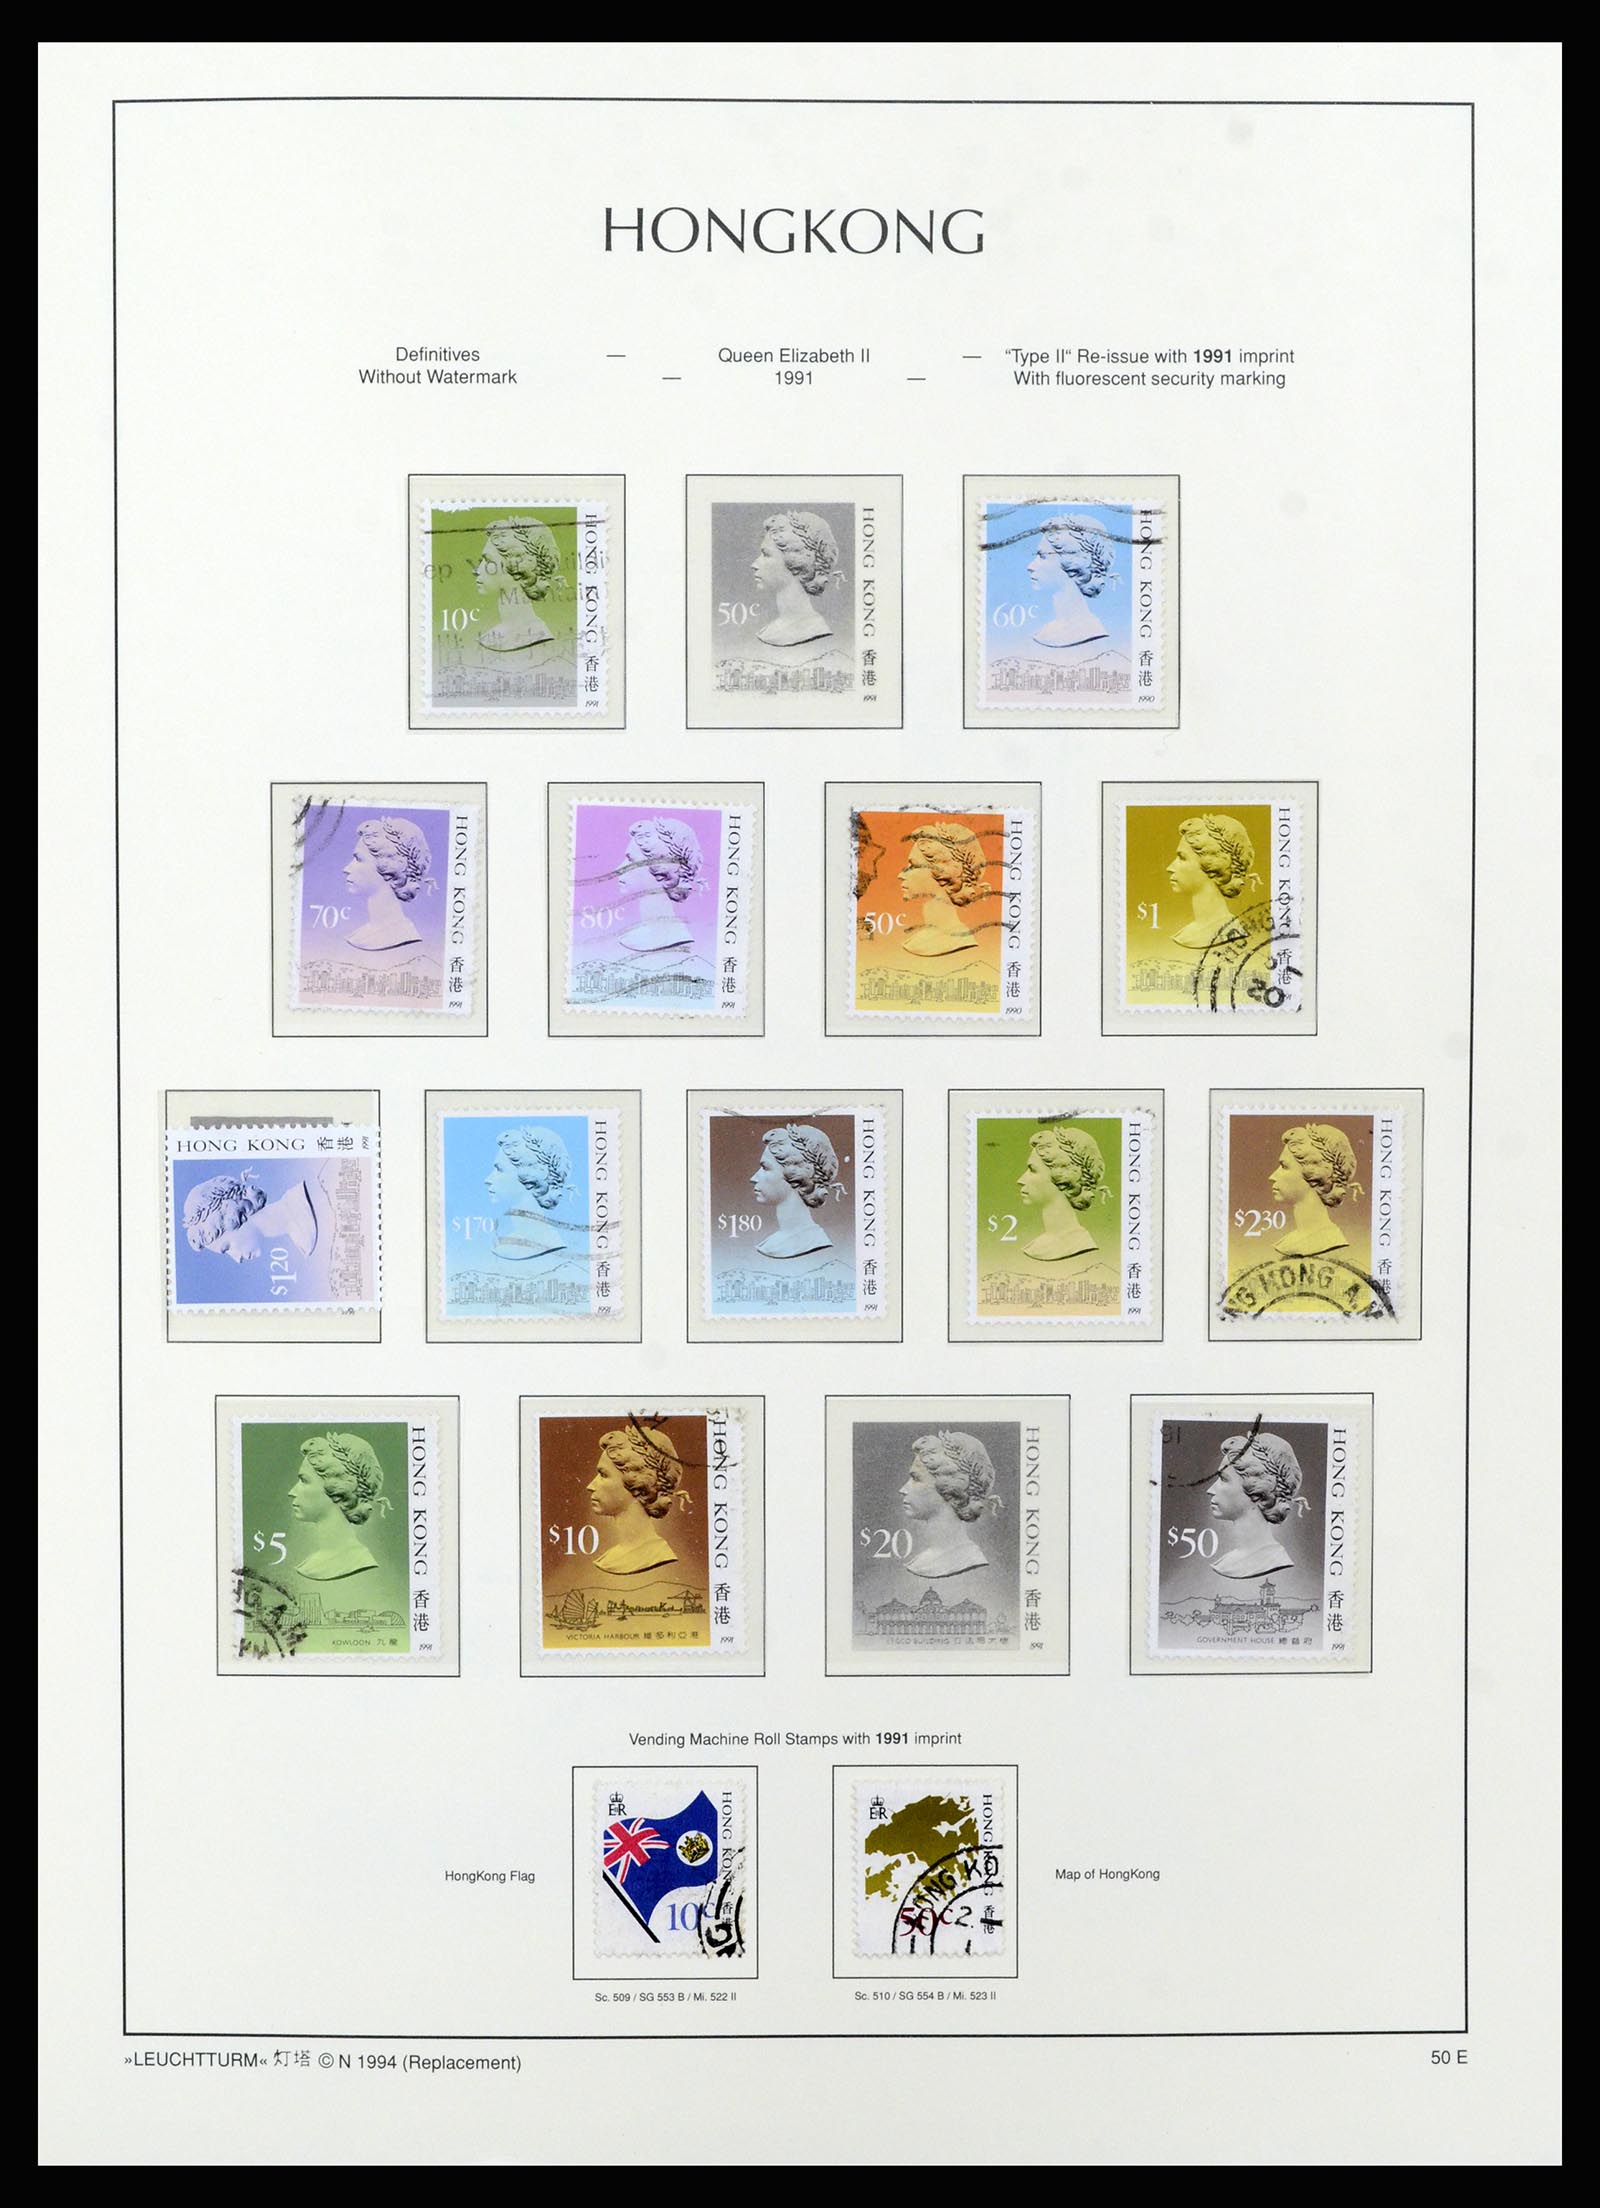 37070 060 - Stamp collection 37070 Hong Kong 1862-1996.